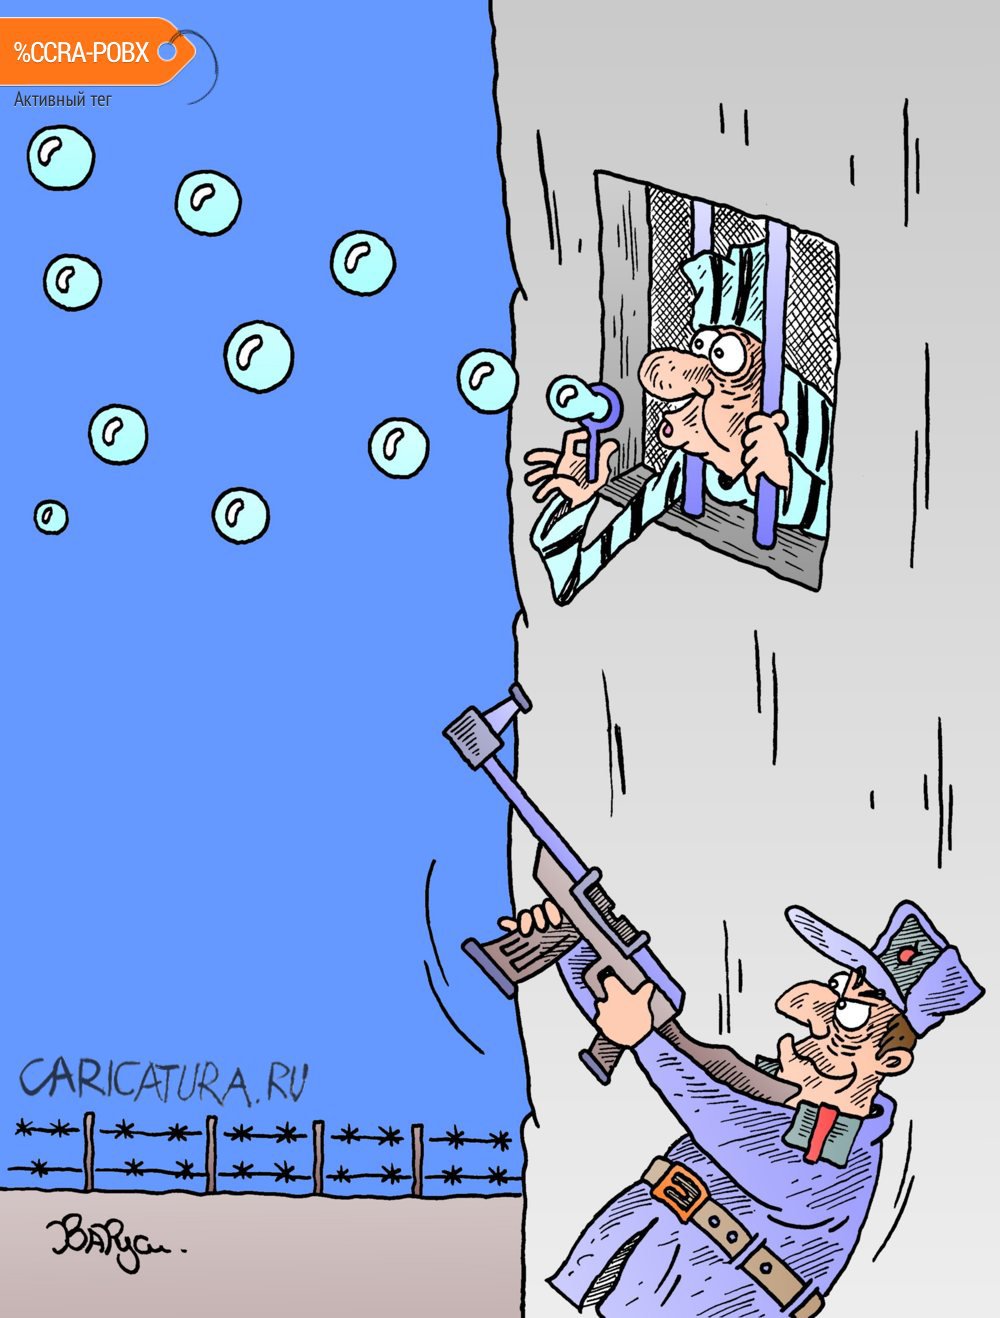 Карикатура "Мыльные пузыри", Руслан Валитов